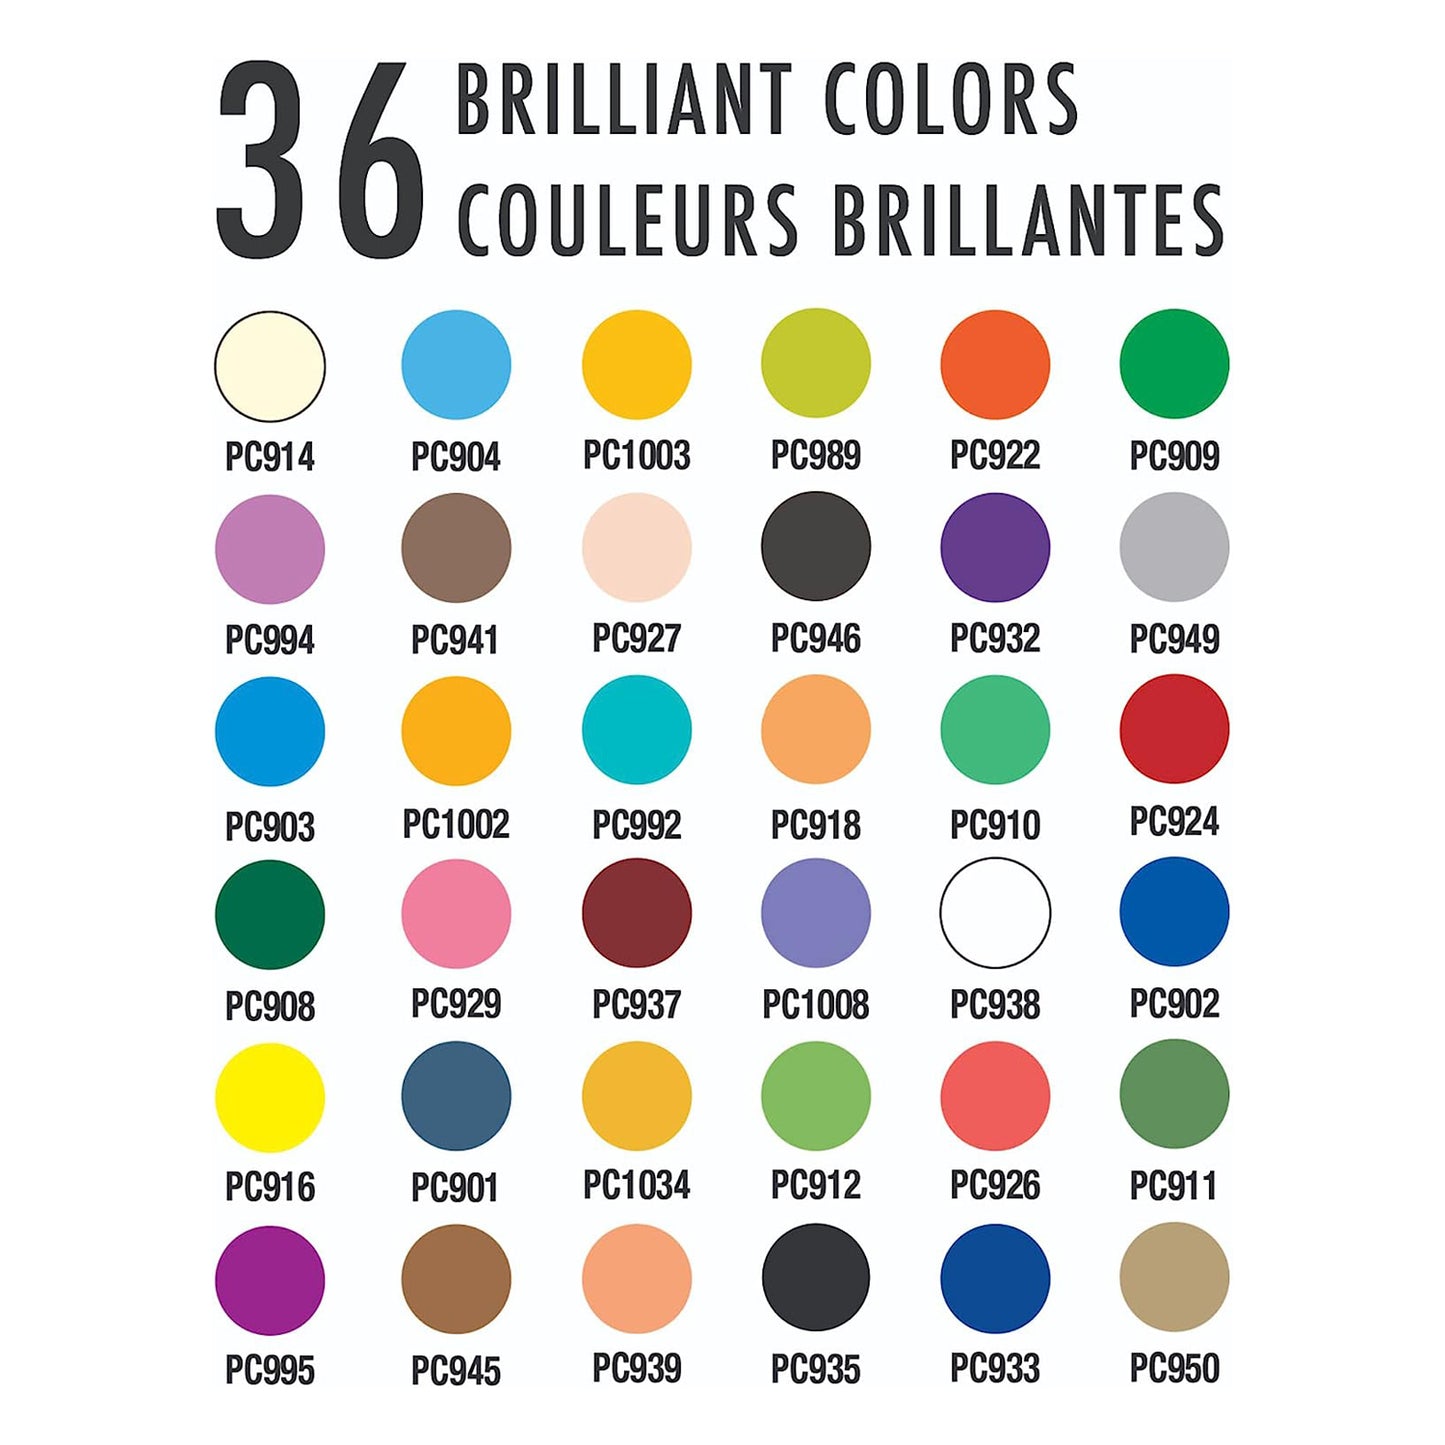 Prismacolor Premier Colored Pencils, Soft Core, 36 Count